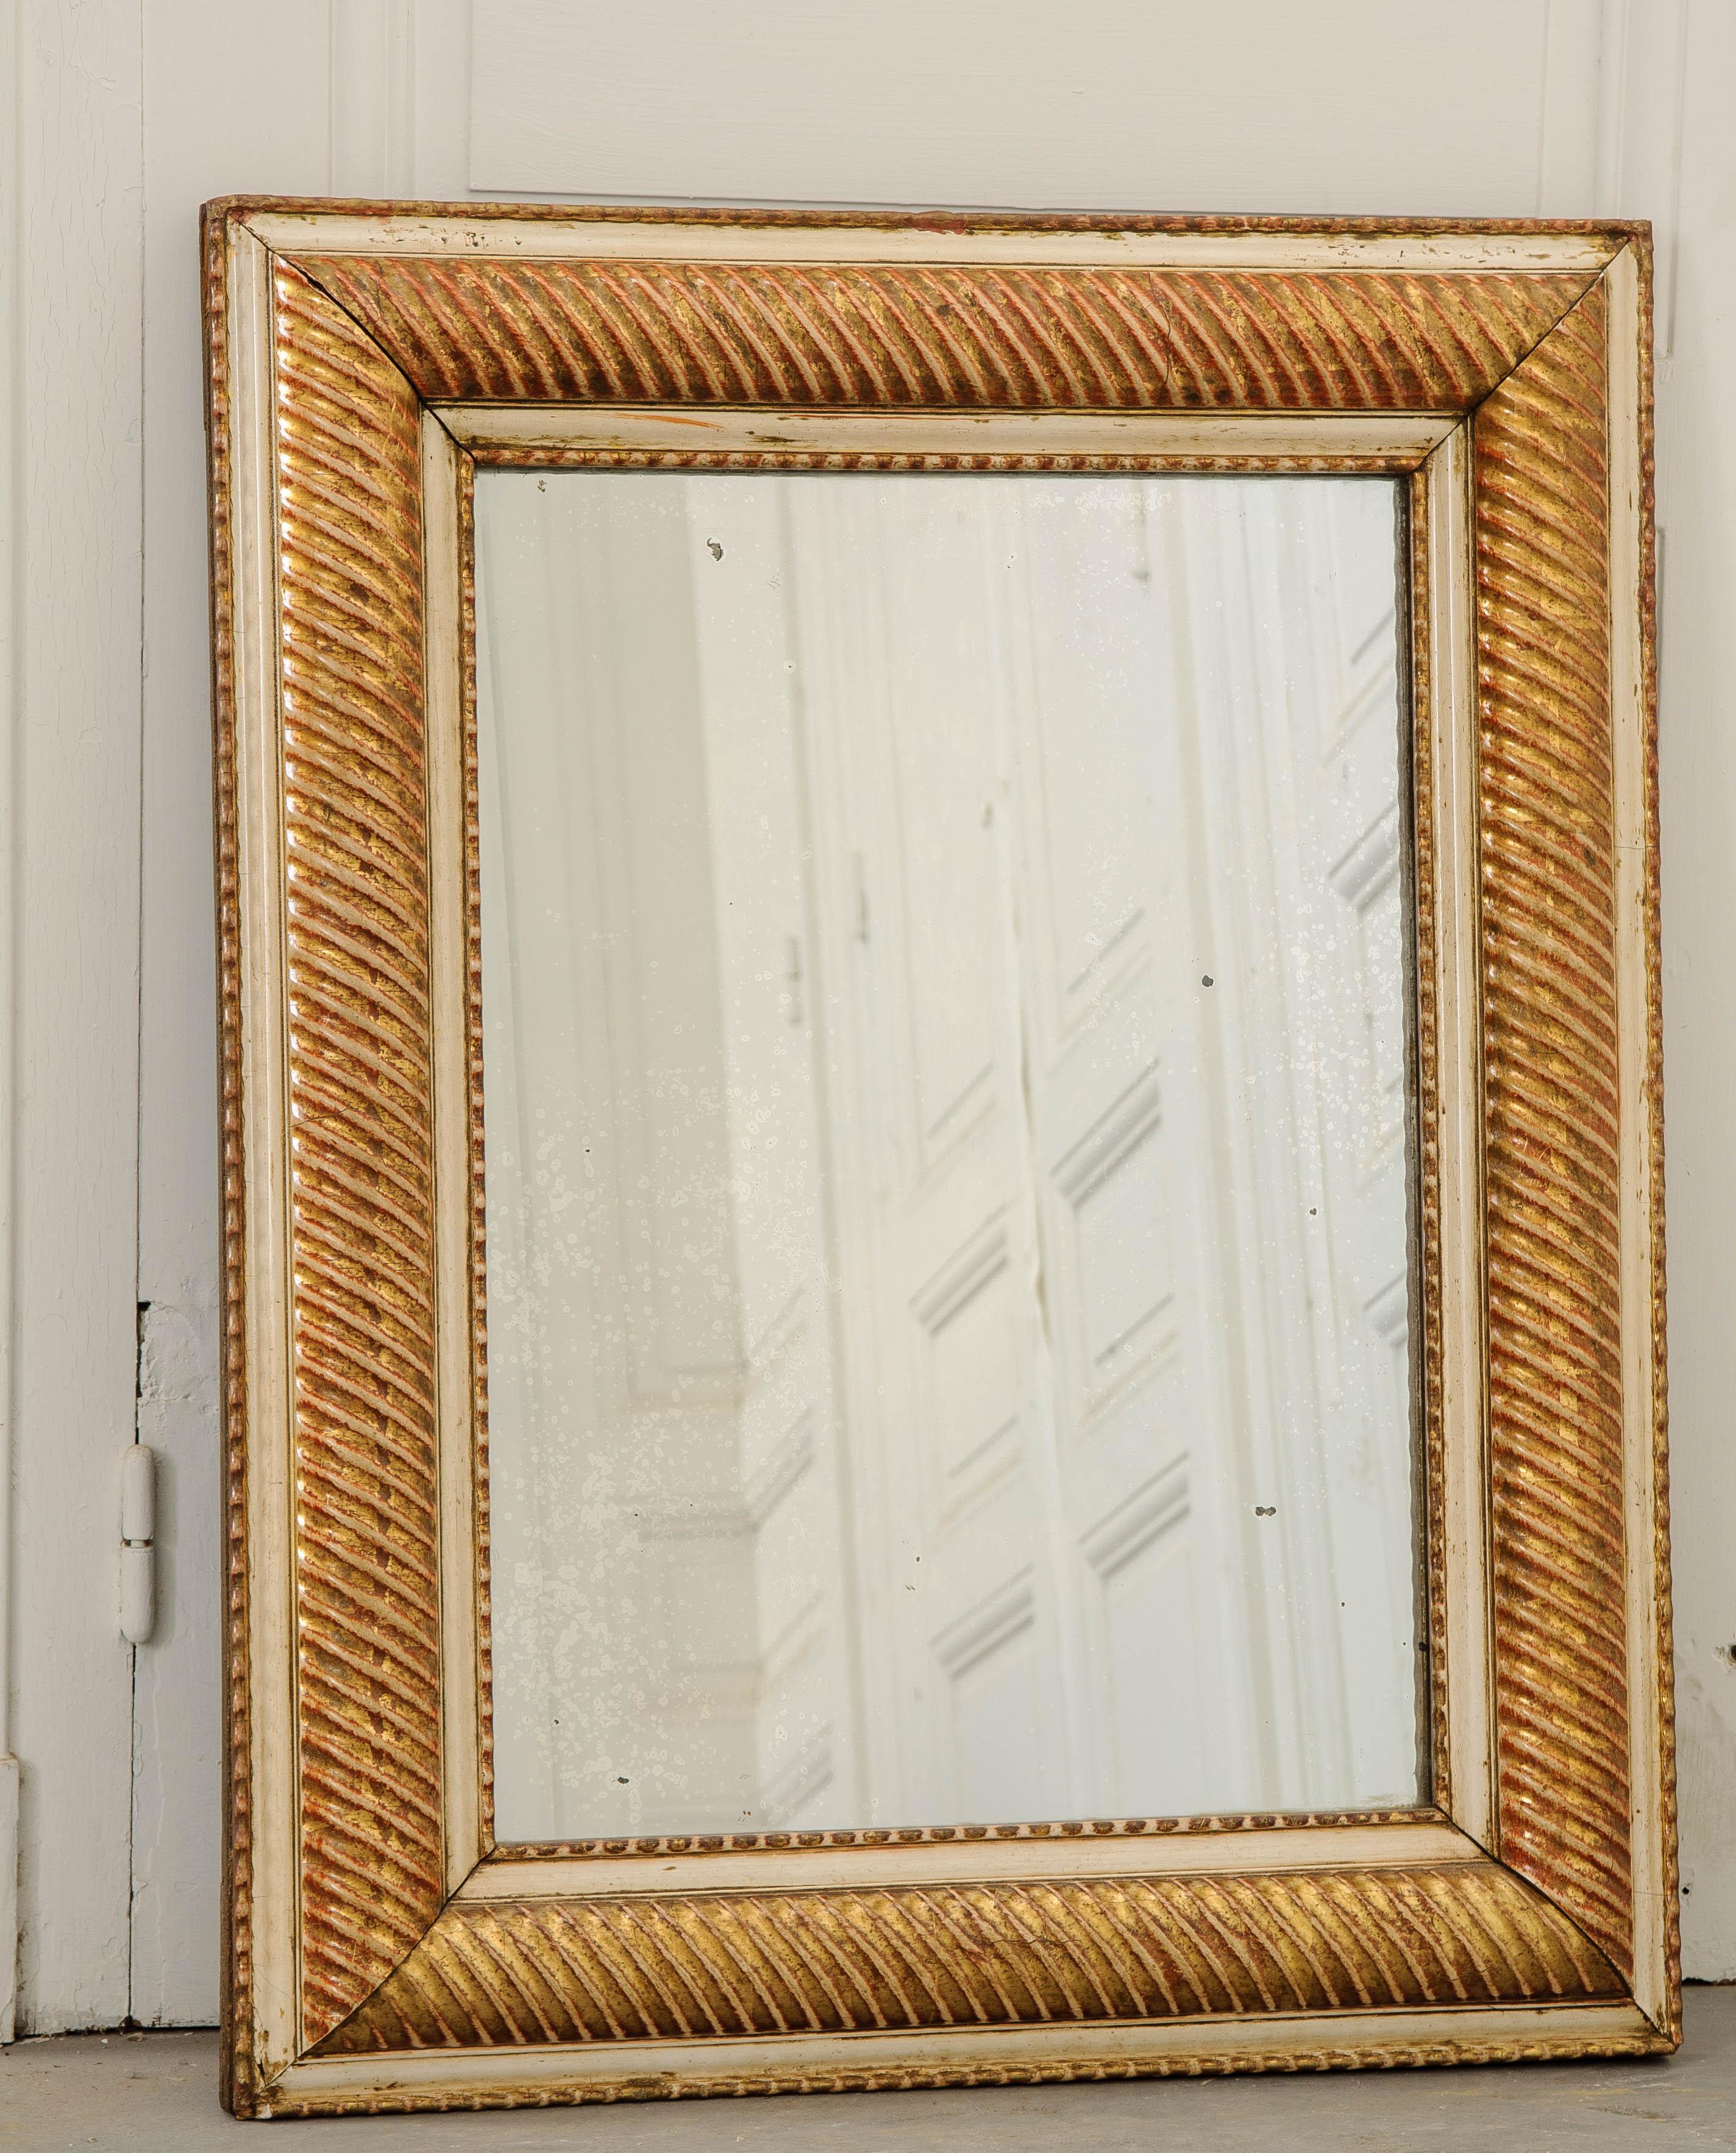 Ein schöner Spiegel aus vergoldetem Holz, hergestellt in Frankreich, um 1850. Dieser geradlinige antike Spiegel hat einen dicken Rahmen mit einem einzigartigen Design, das ihn vollständig umgibt. Der Rahmen wurde mit einem Korkenzieher-Motiv